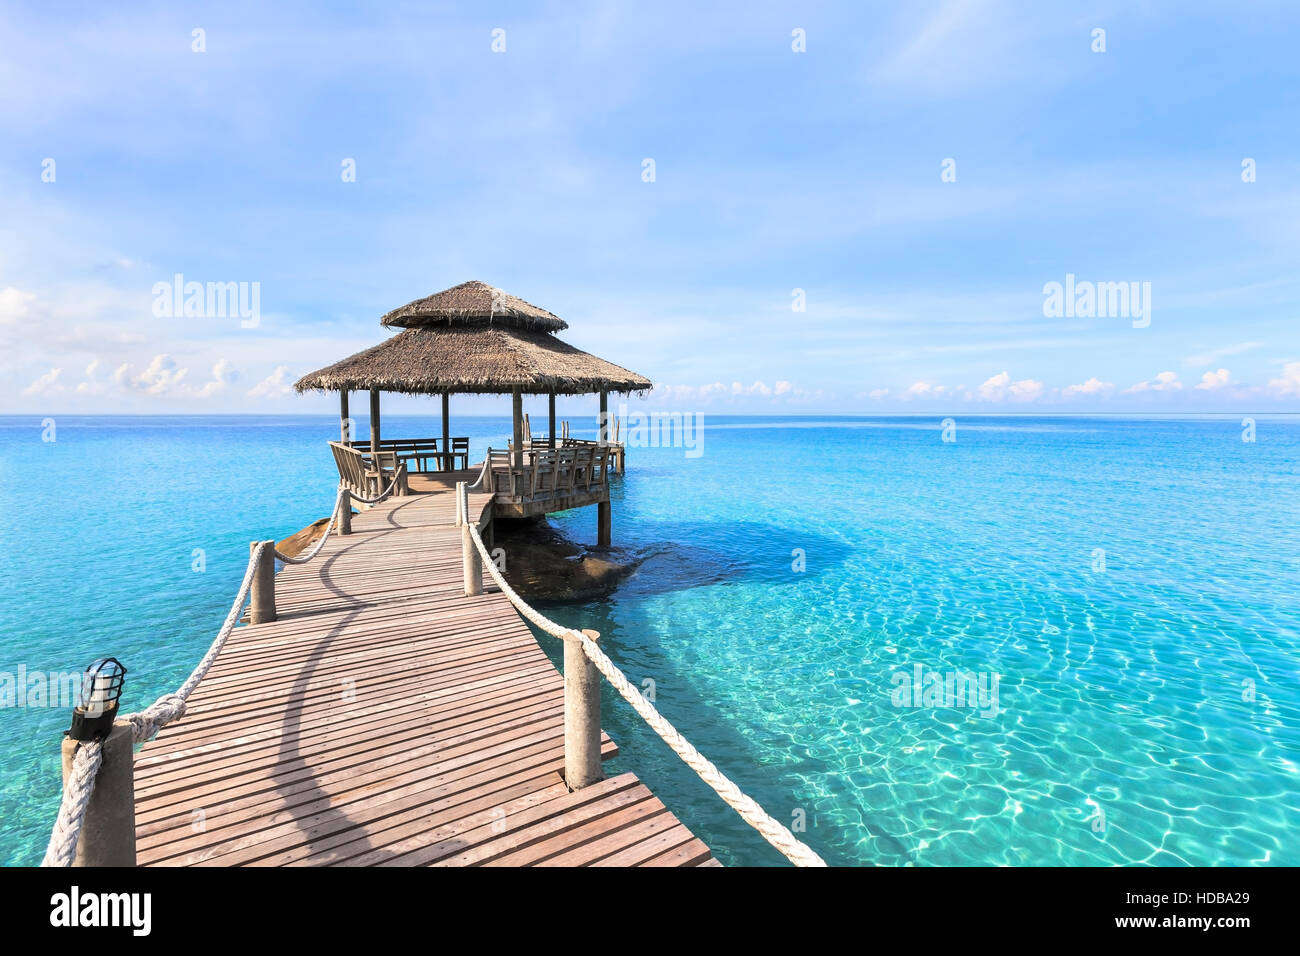 Beau paysage de plage tropicale avec jetée en bois et transparent de l'eau de mer turquoise, destination vacances voyage paradis Banque D'Images